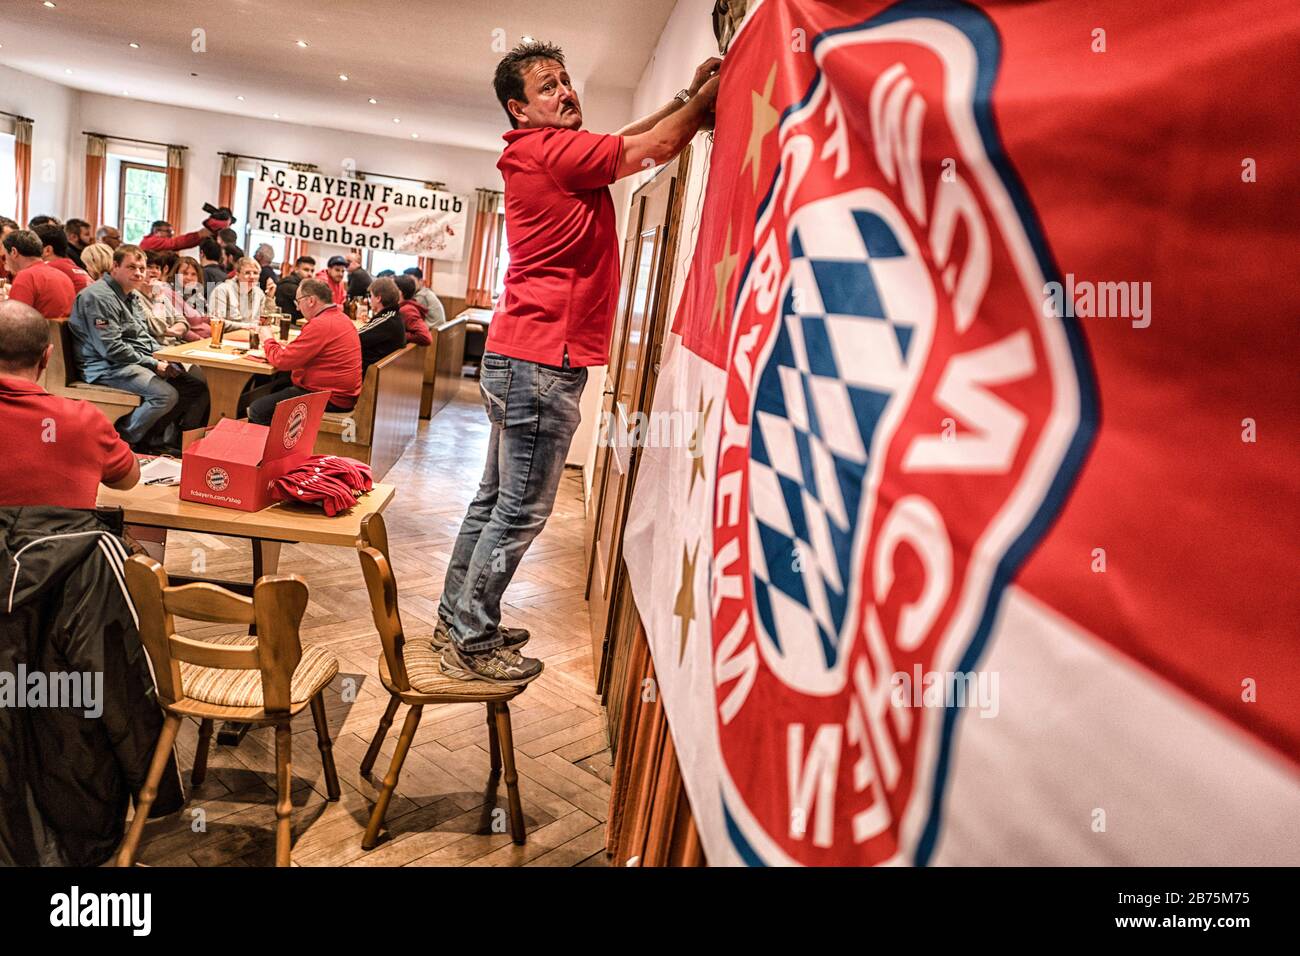 Der FC Bayern Fanclub "Red Bulls Taubenbach" veranstaltet seine jährliche Hauptversammlung im Gasthaus "Pechaigner" in Noppling in Rottal, Niederbayern. [Automatisierte Übersetzung] Stockfoto